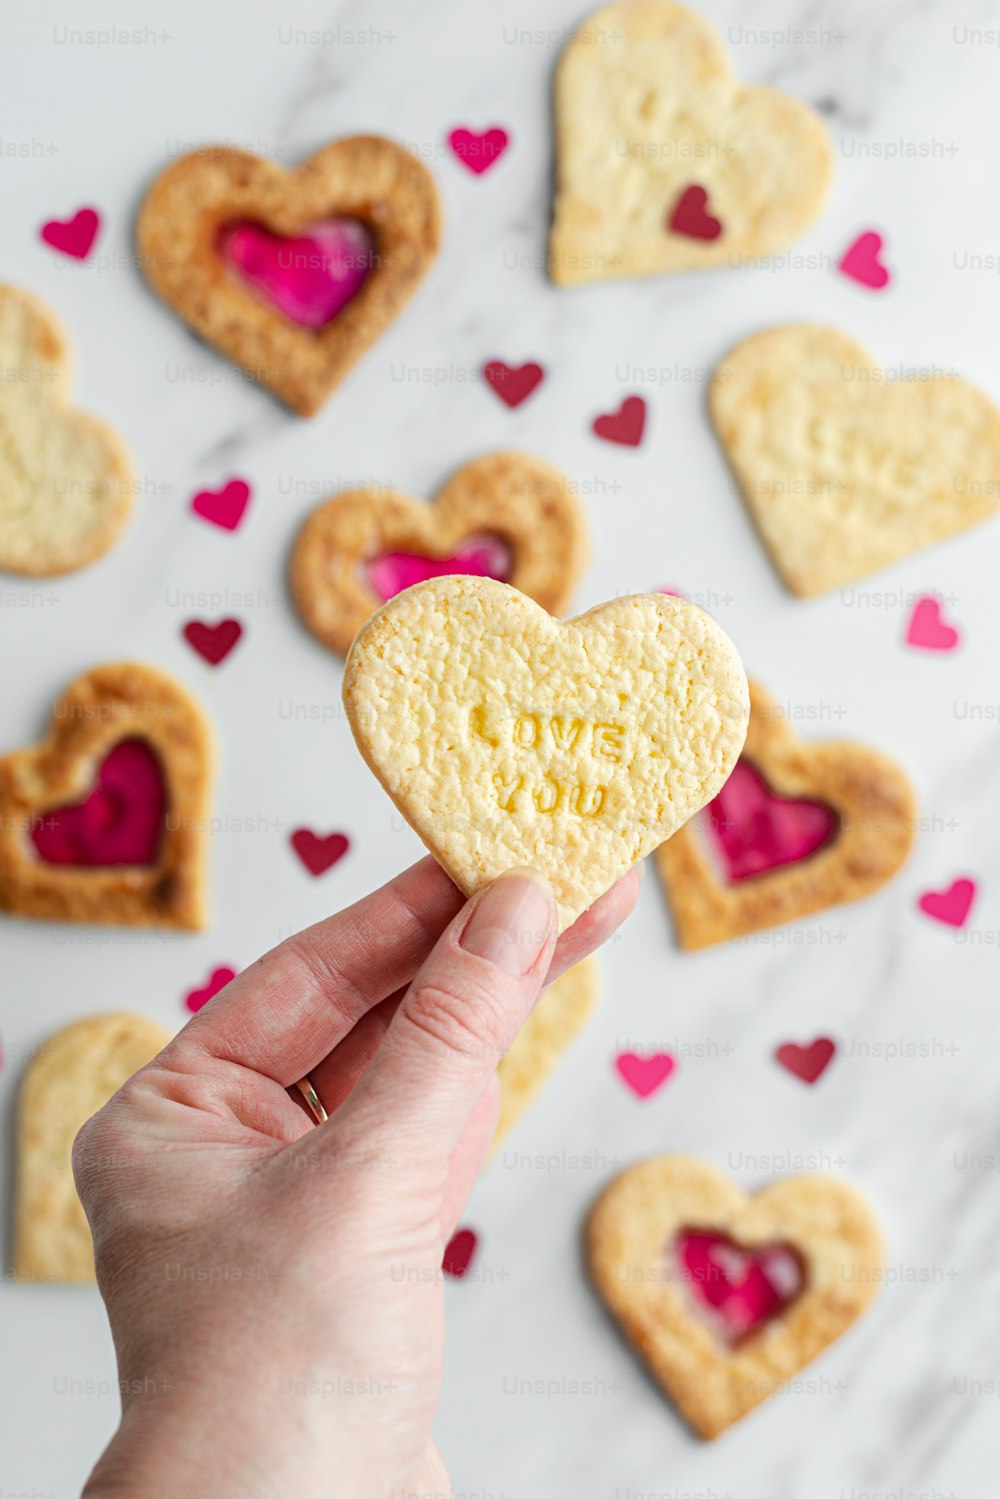 une personne tenant un biscuit en forme de cœur dans sa main